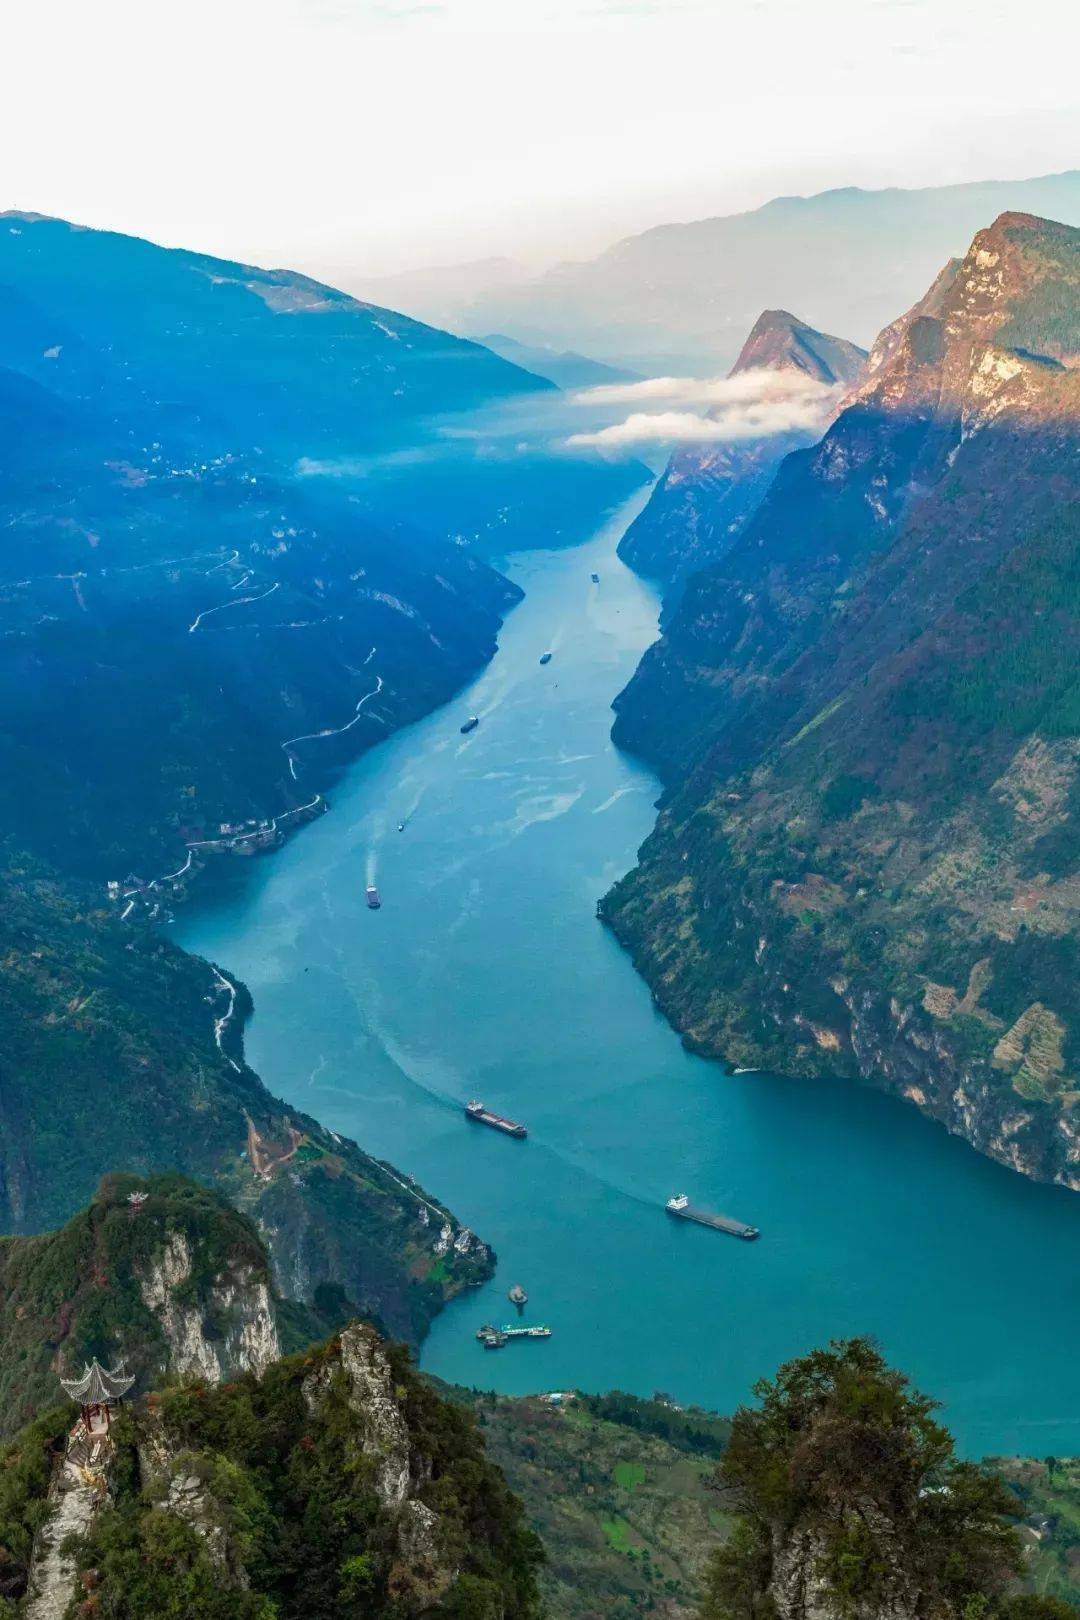 【水经注·江水】穿越最美长江三峡,感受诗词中的雄伟奇景